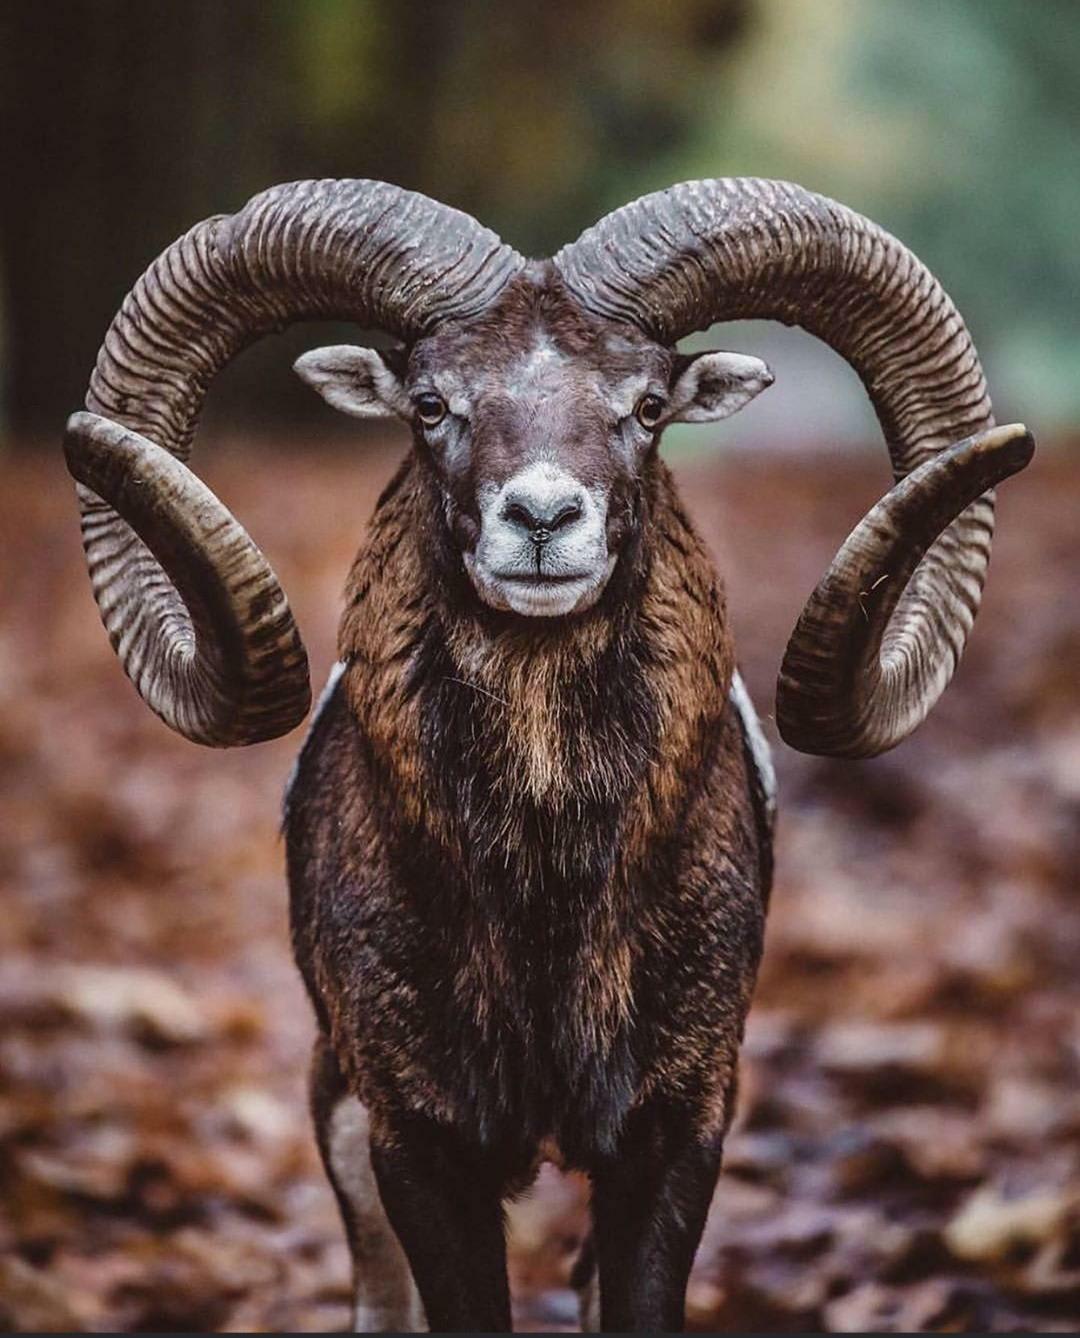 A Mouflon